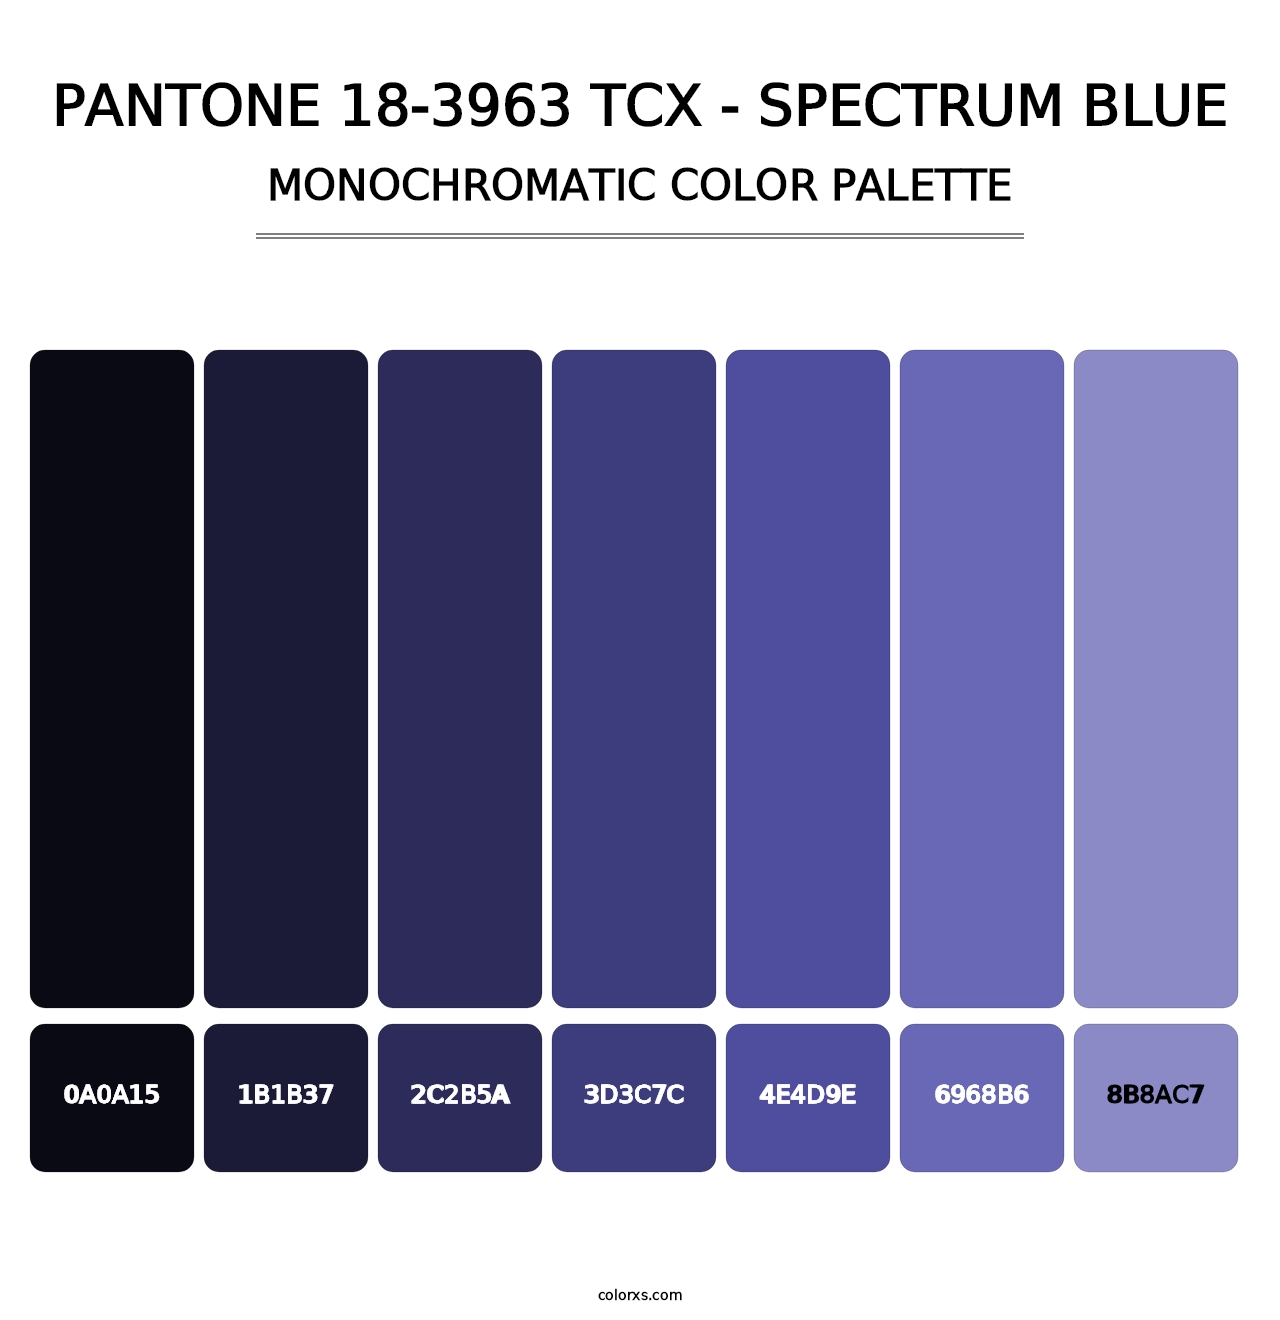 PANTONE 18-3963 TCX - Spectrum Blue - Monochromatic Color Palette